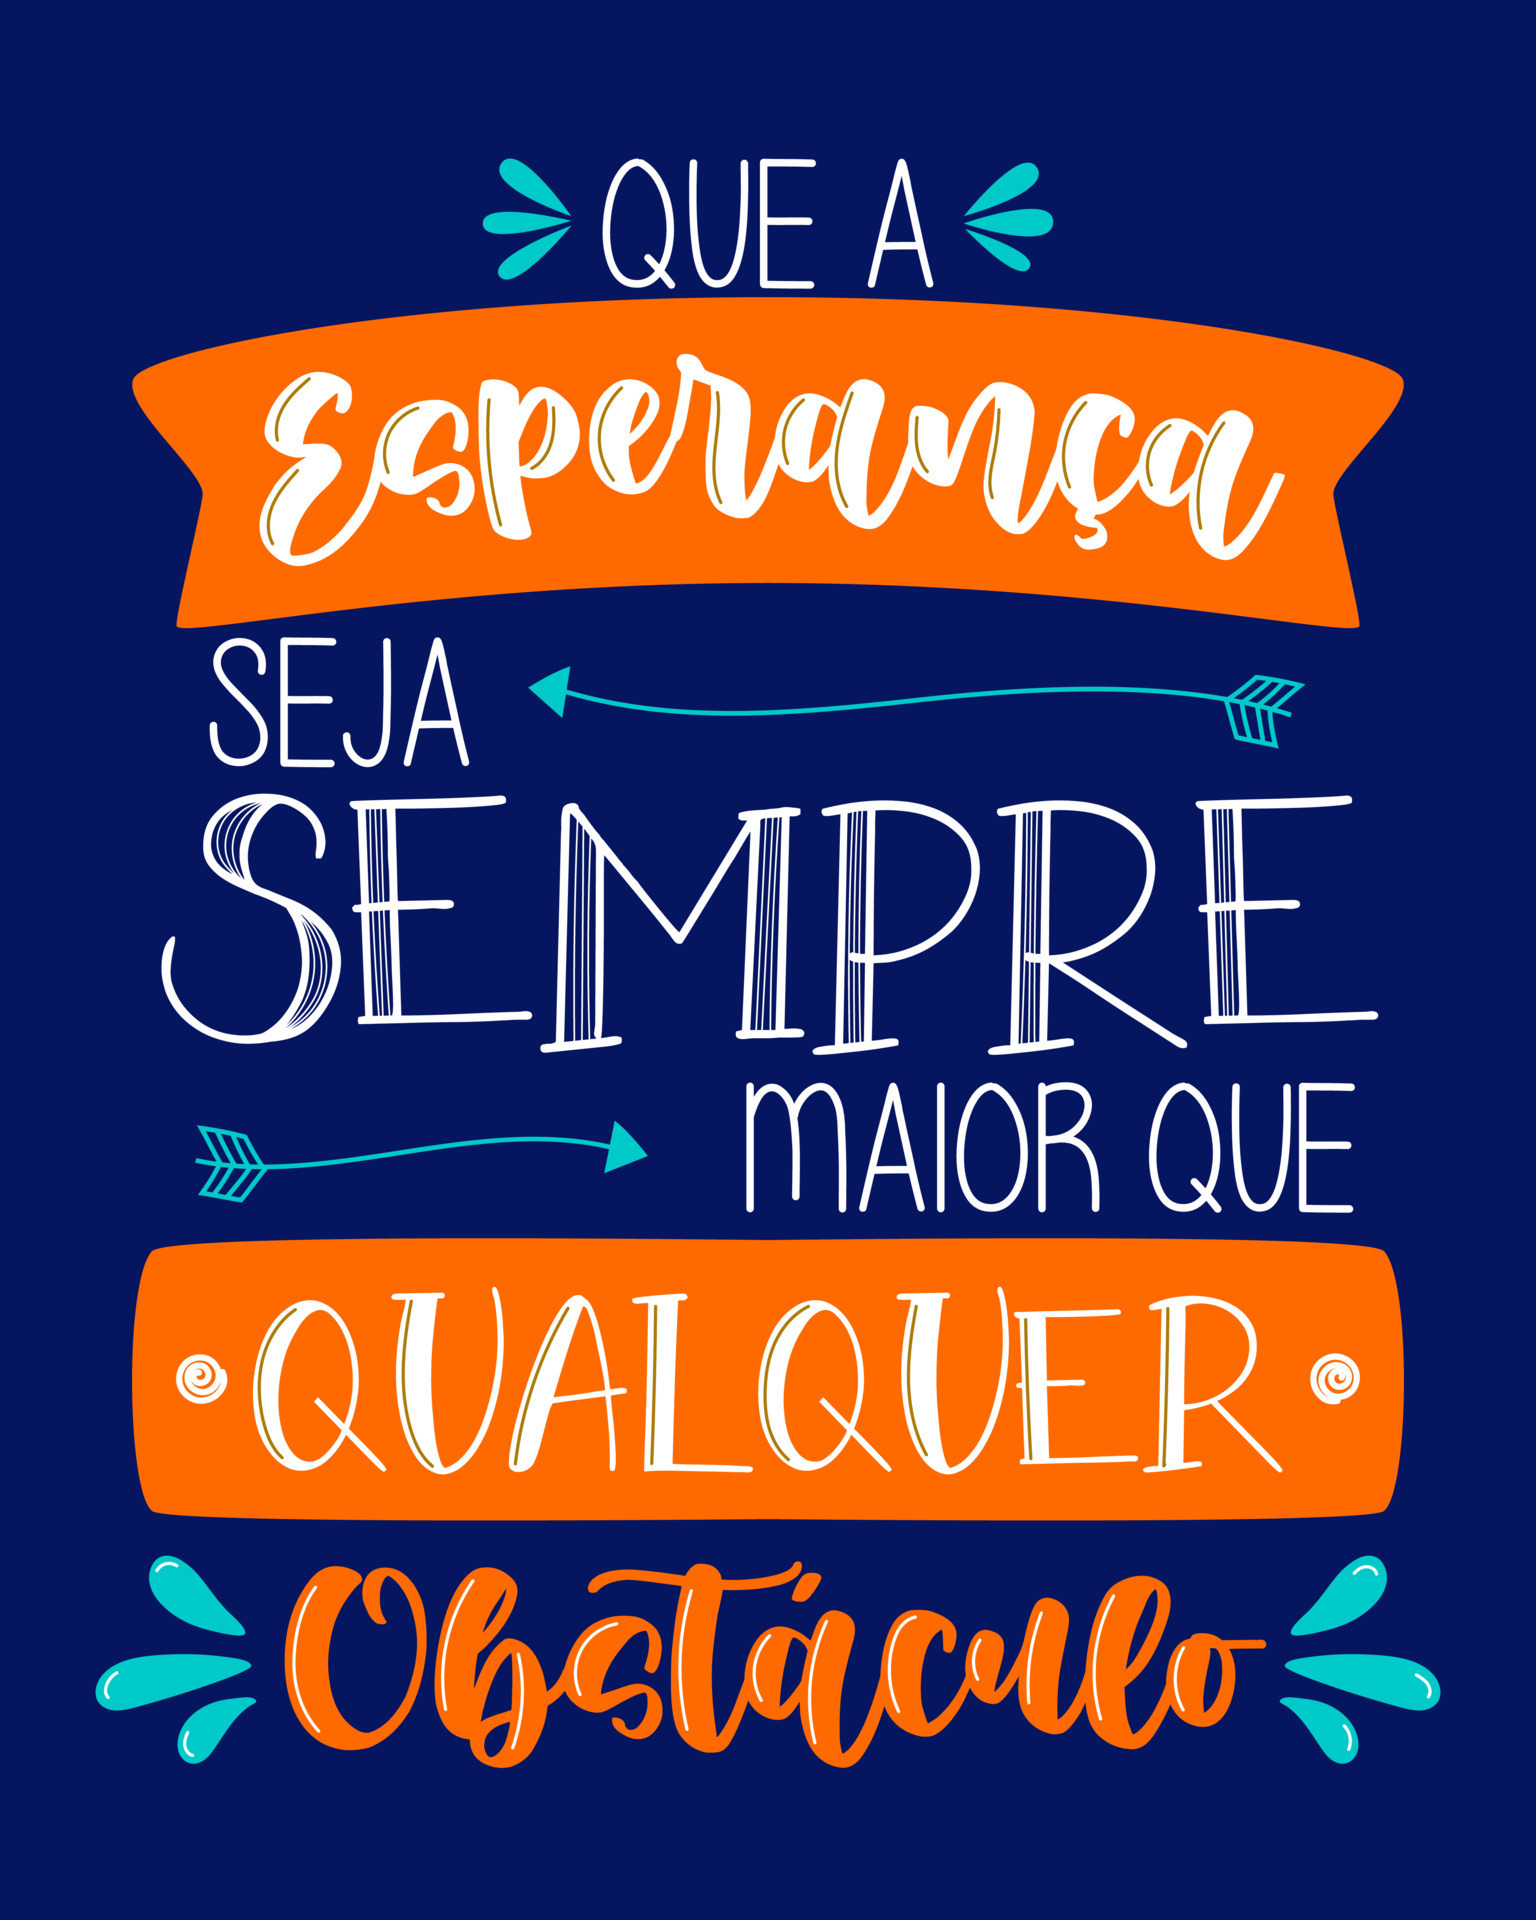 letras de citação de vida em português brasileiro. tradução - o